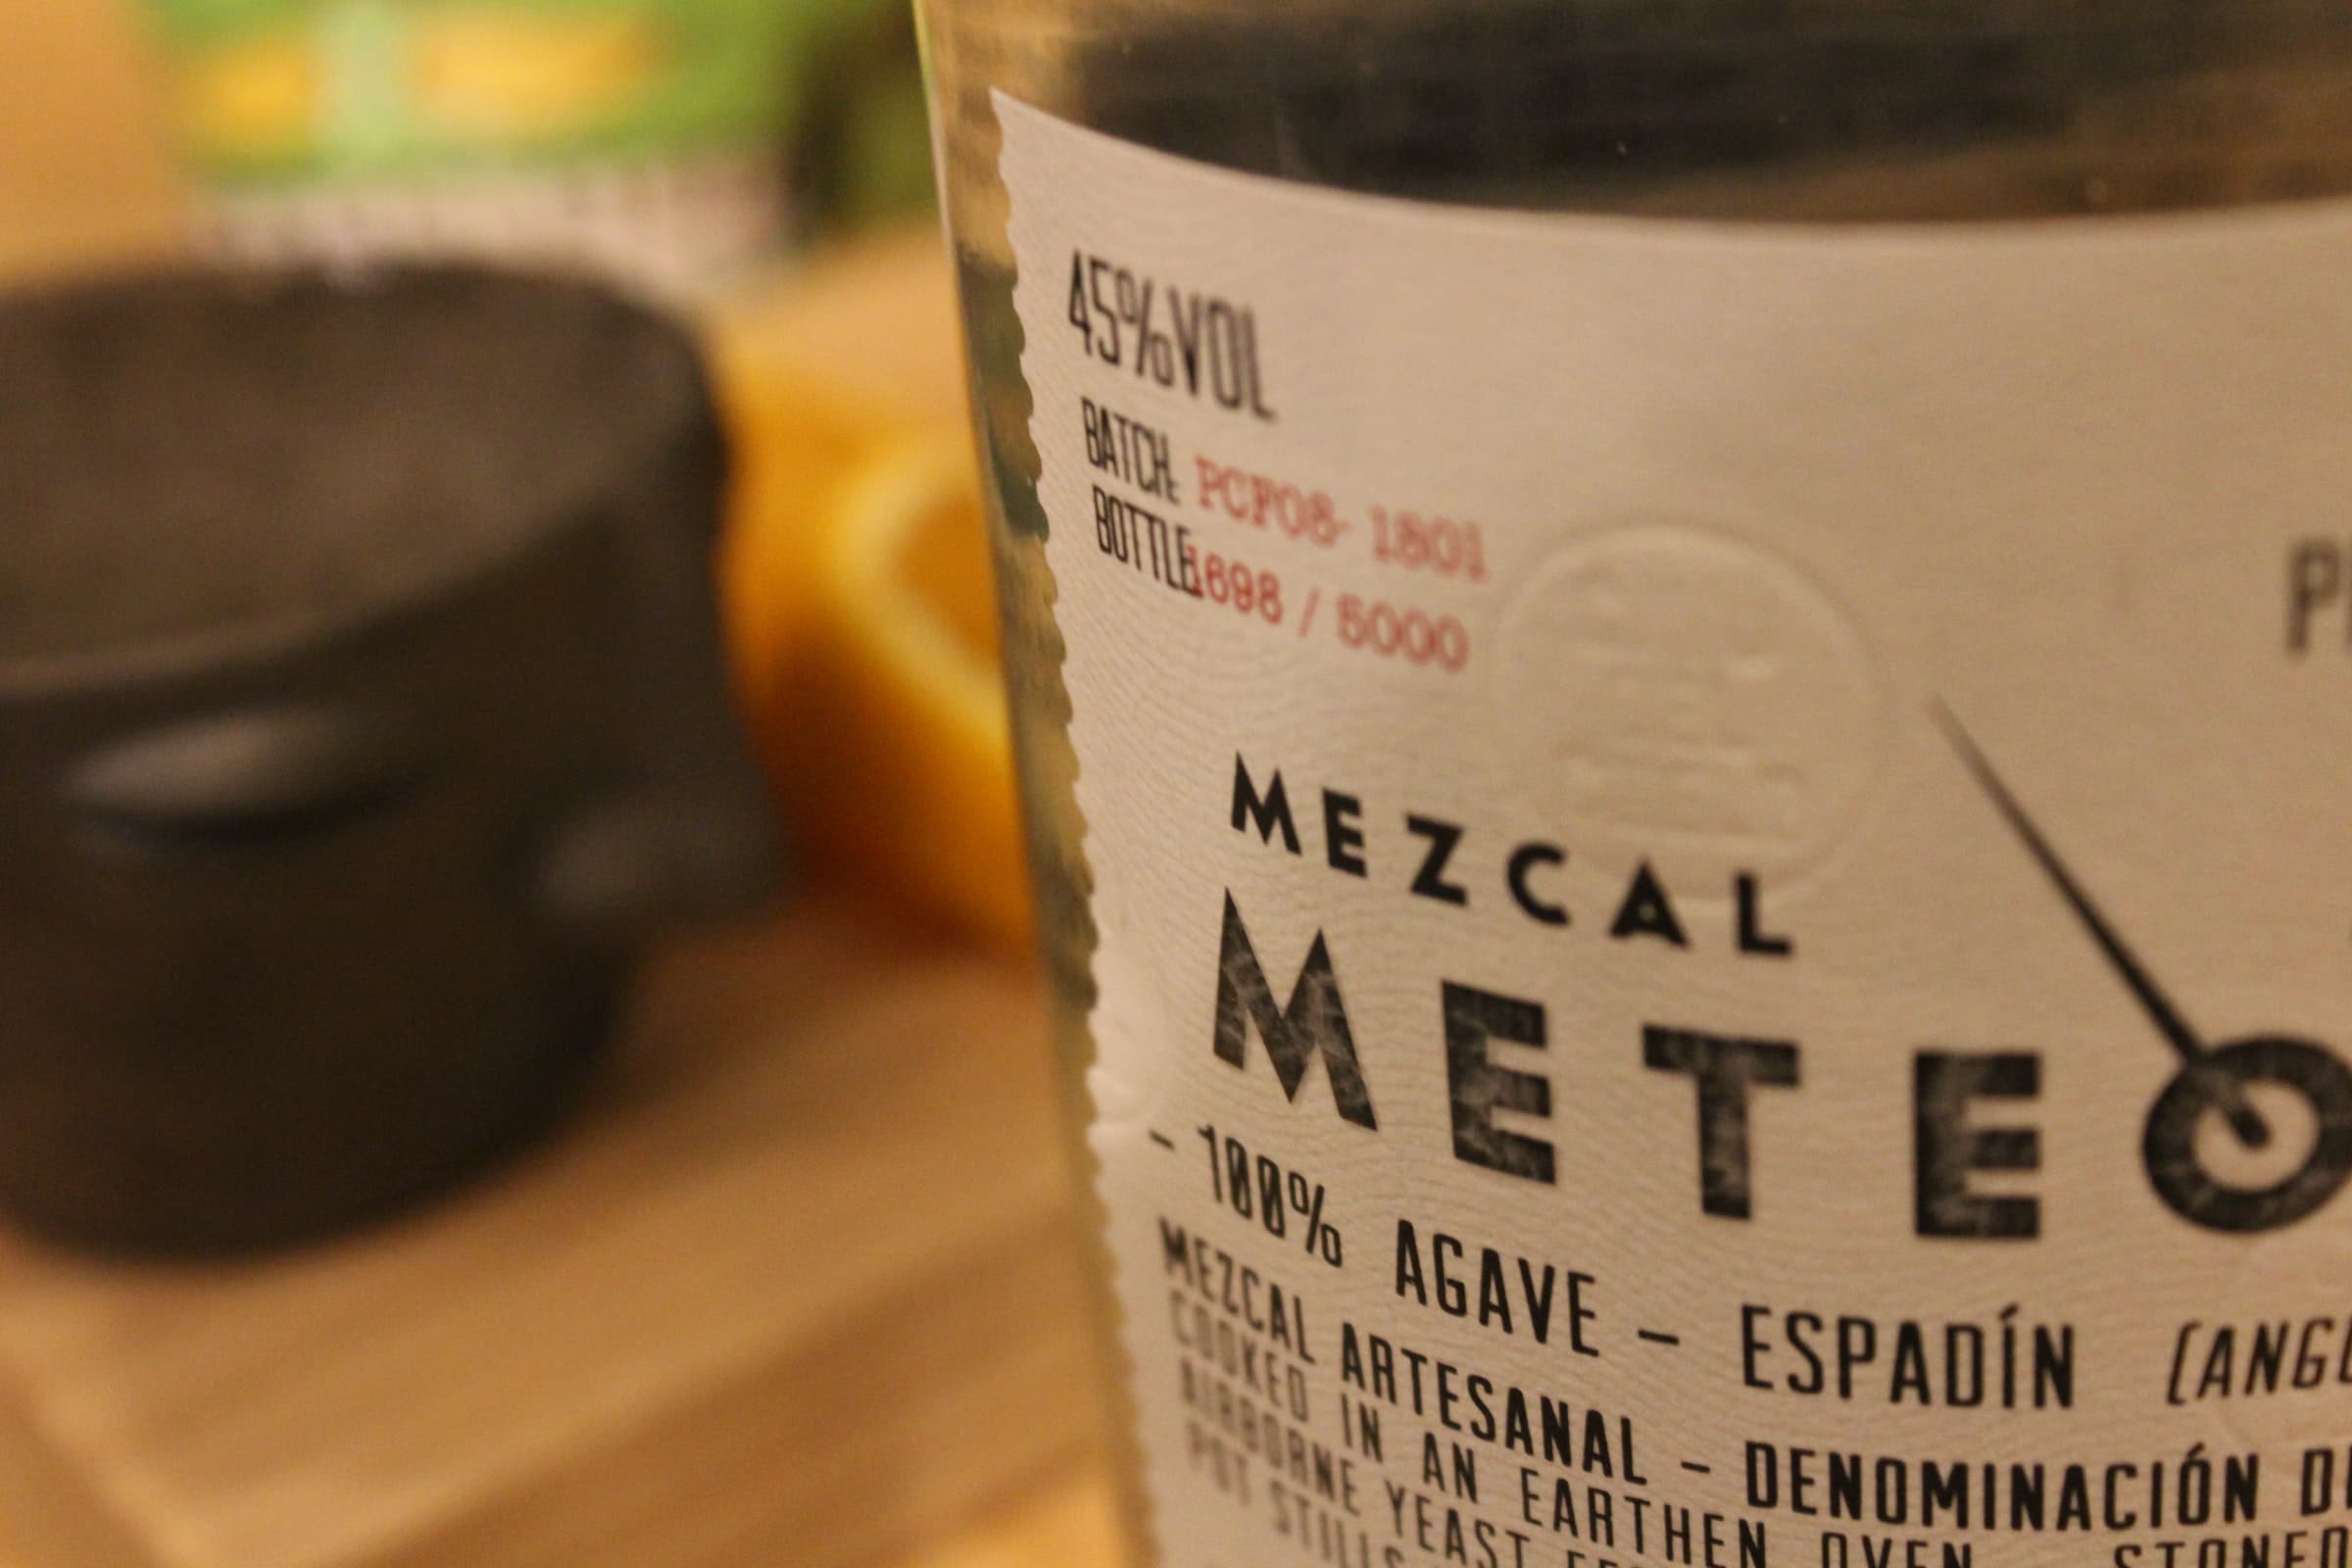 A Mezcal Bottle Label